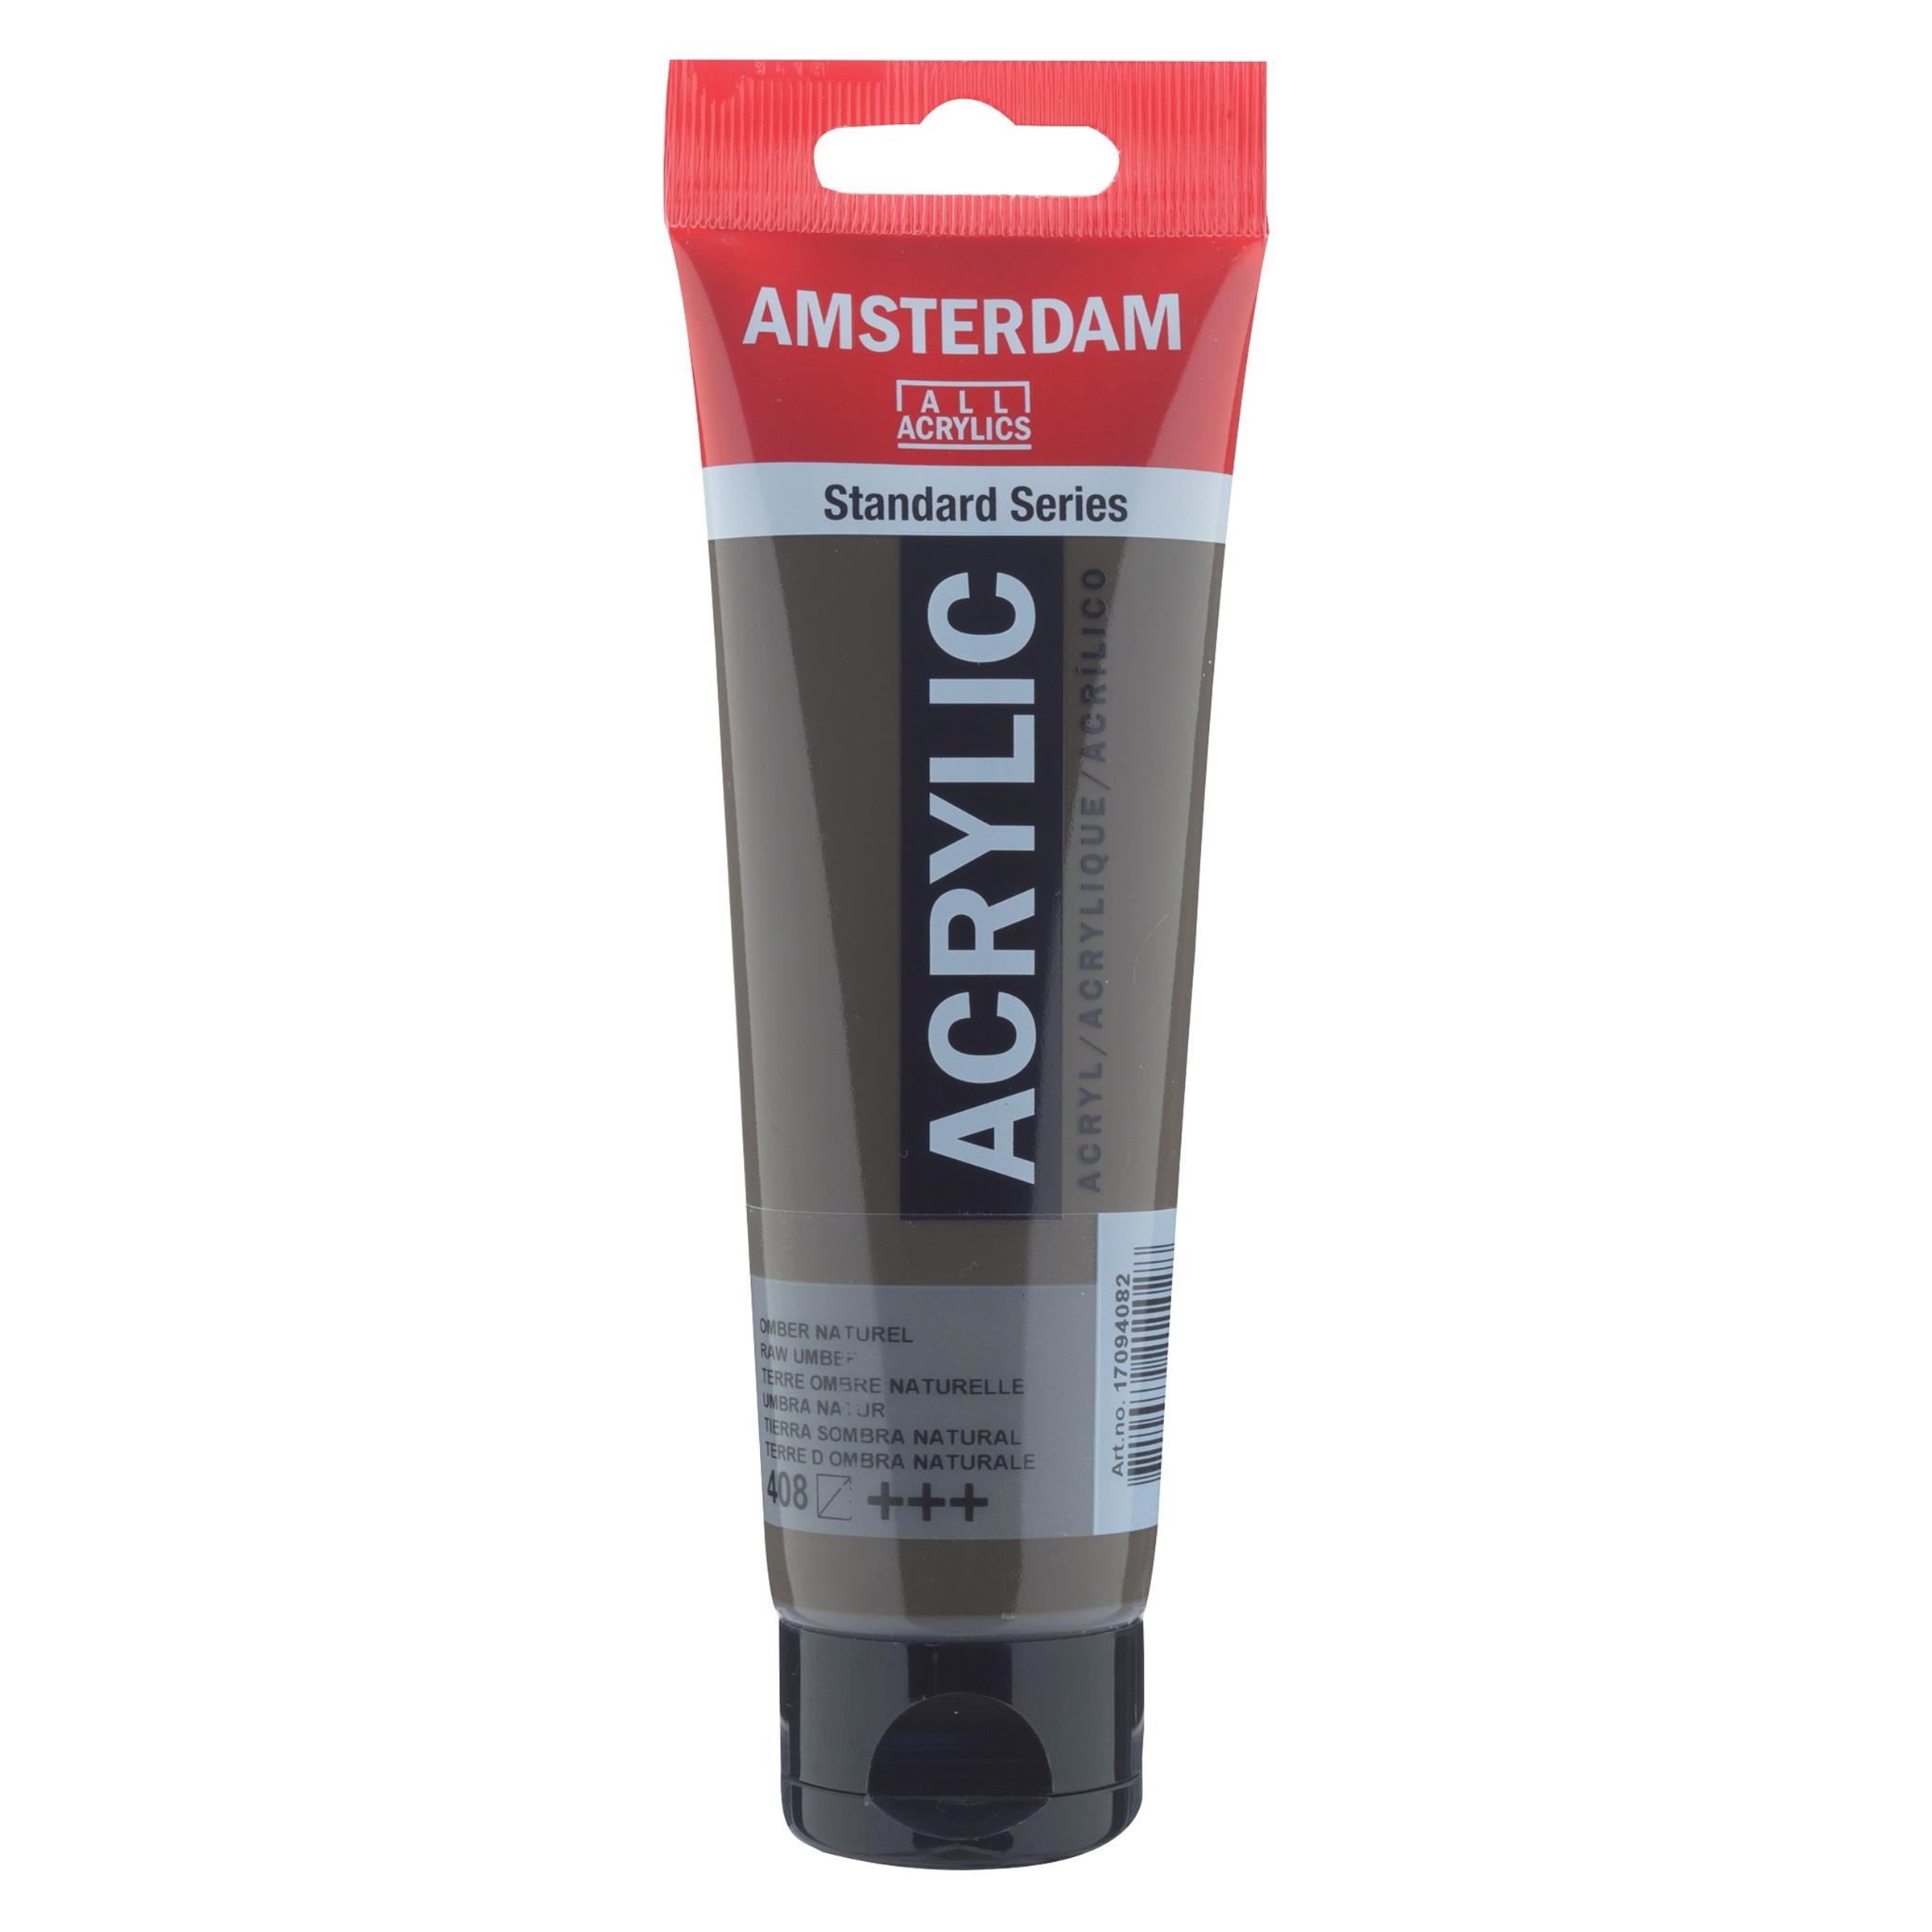 Acrilico Amsterdam tierra sombra natural tubo 120ml